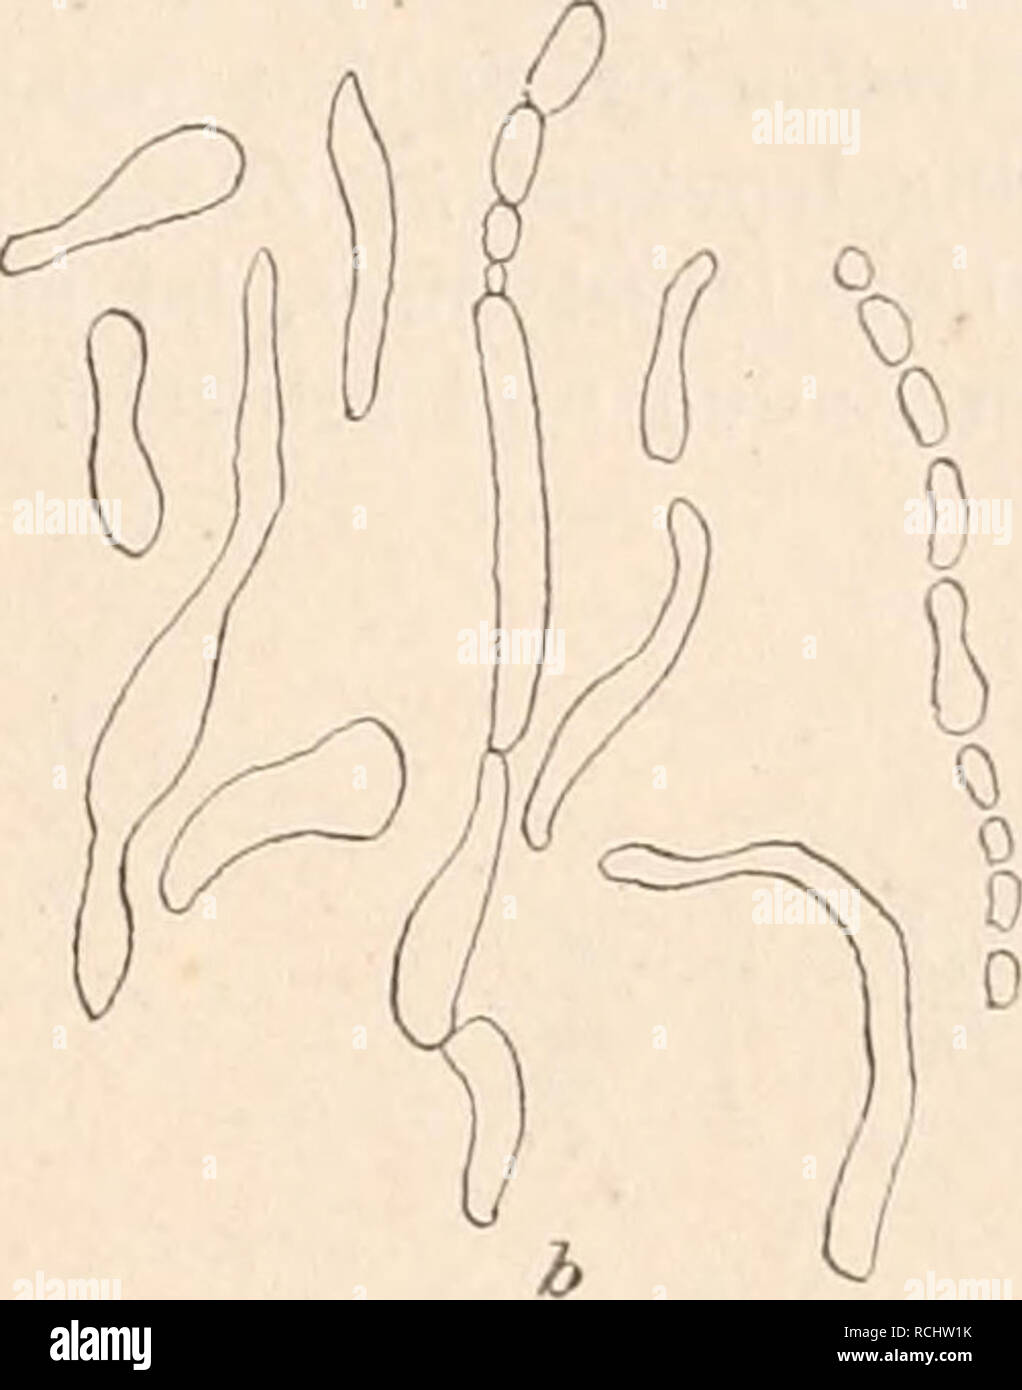 . Die NatÃ¼rlichen Pflanzenfamilien nebst stand Gattungen und Arten, insbesondere den wichtigeren Nutzpflanzen, unter Mitwirkung zahlreicher hervorragender Fachgelehrten begrÃ¼ndet. Botanik. Bacteriaceae. (Migula. 25 anderen beweglichen Arten von Hüppe zu der Sammelspecies des Bazillus der SeptikÃ ¤ Mia haemorrhagica zusammengefasst sind. Â B. capsulatum (Pfeiffer) Migula Ã¤hnlich wie Ã. Pneumoniae und B. pneumonicum im TierkÃ¶rper von einer starken Gallertkapsel umgebene StÃ¤bchen, welche in kÃ¼nstlichen NÃ¤hrboden this Kapsel nicht zeigen. Für manche Tiere pathogen. In Culturen Ã¤hnlich dem Stockfoto